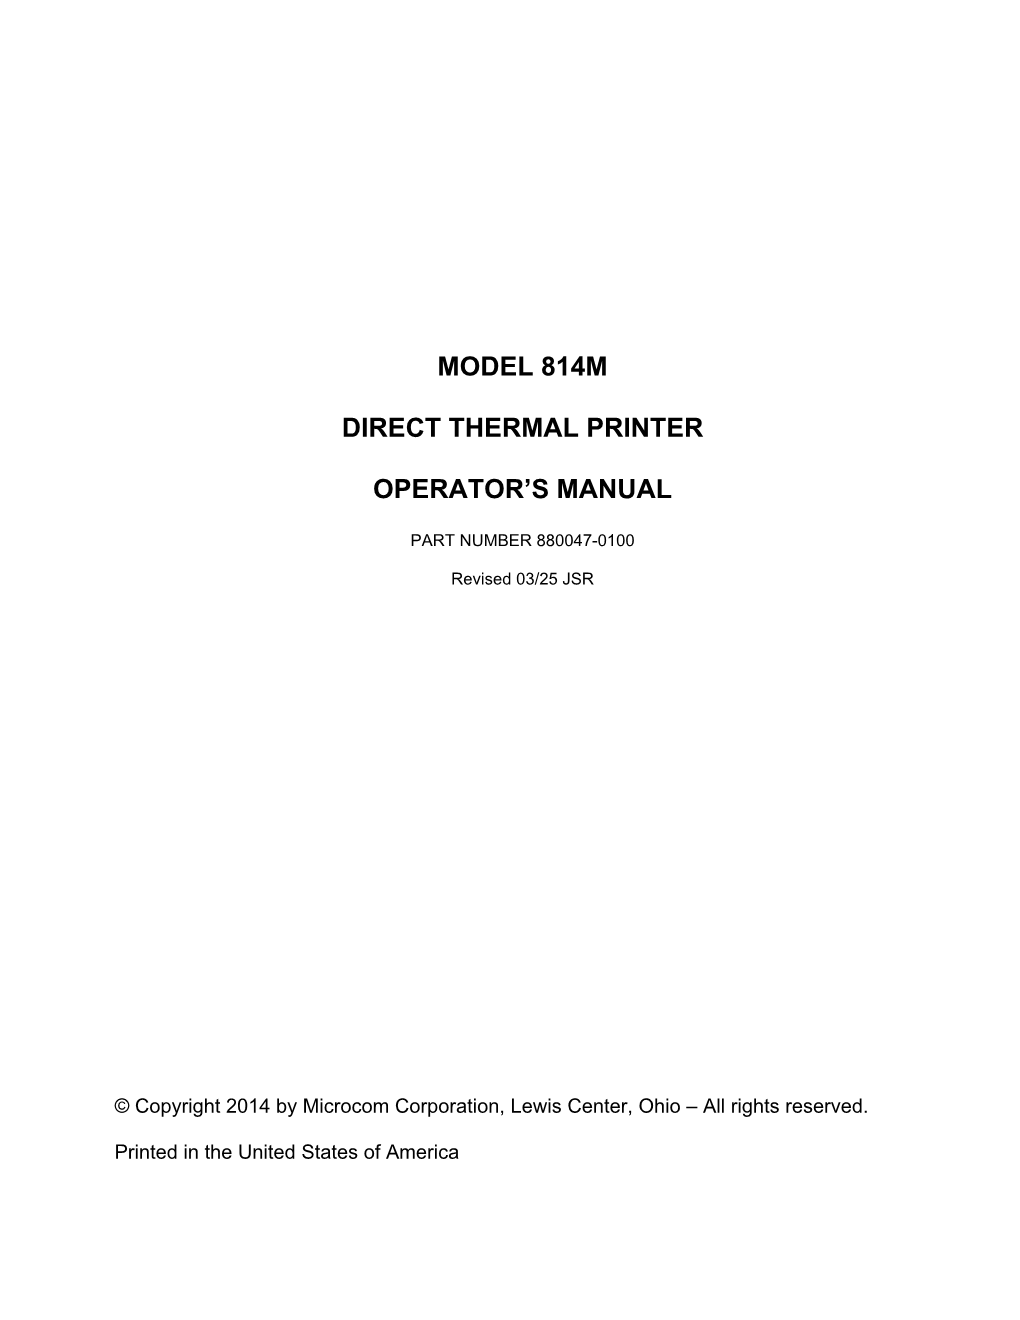 Model 814M Direct Thermal Printer Operator's Manual